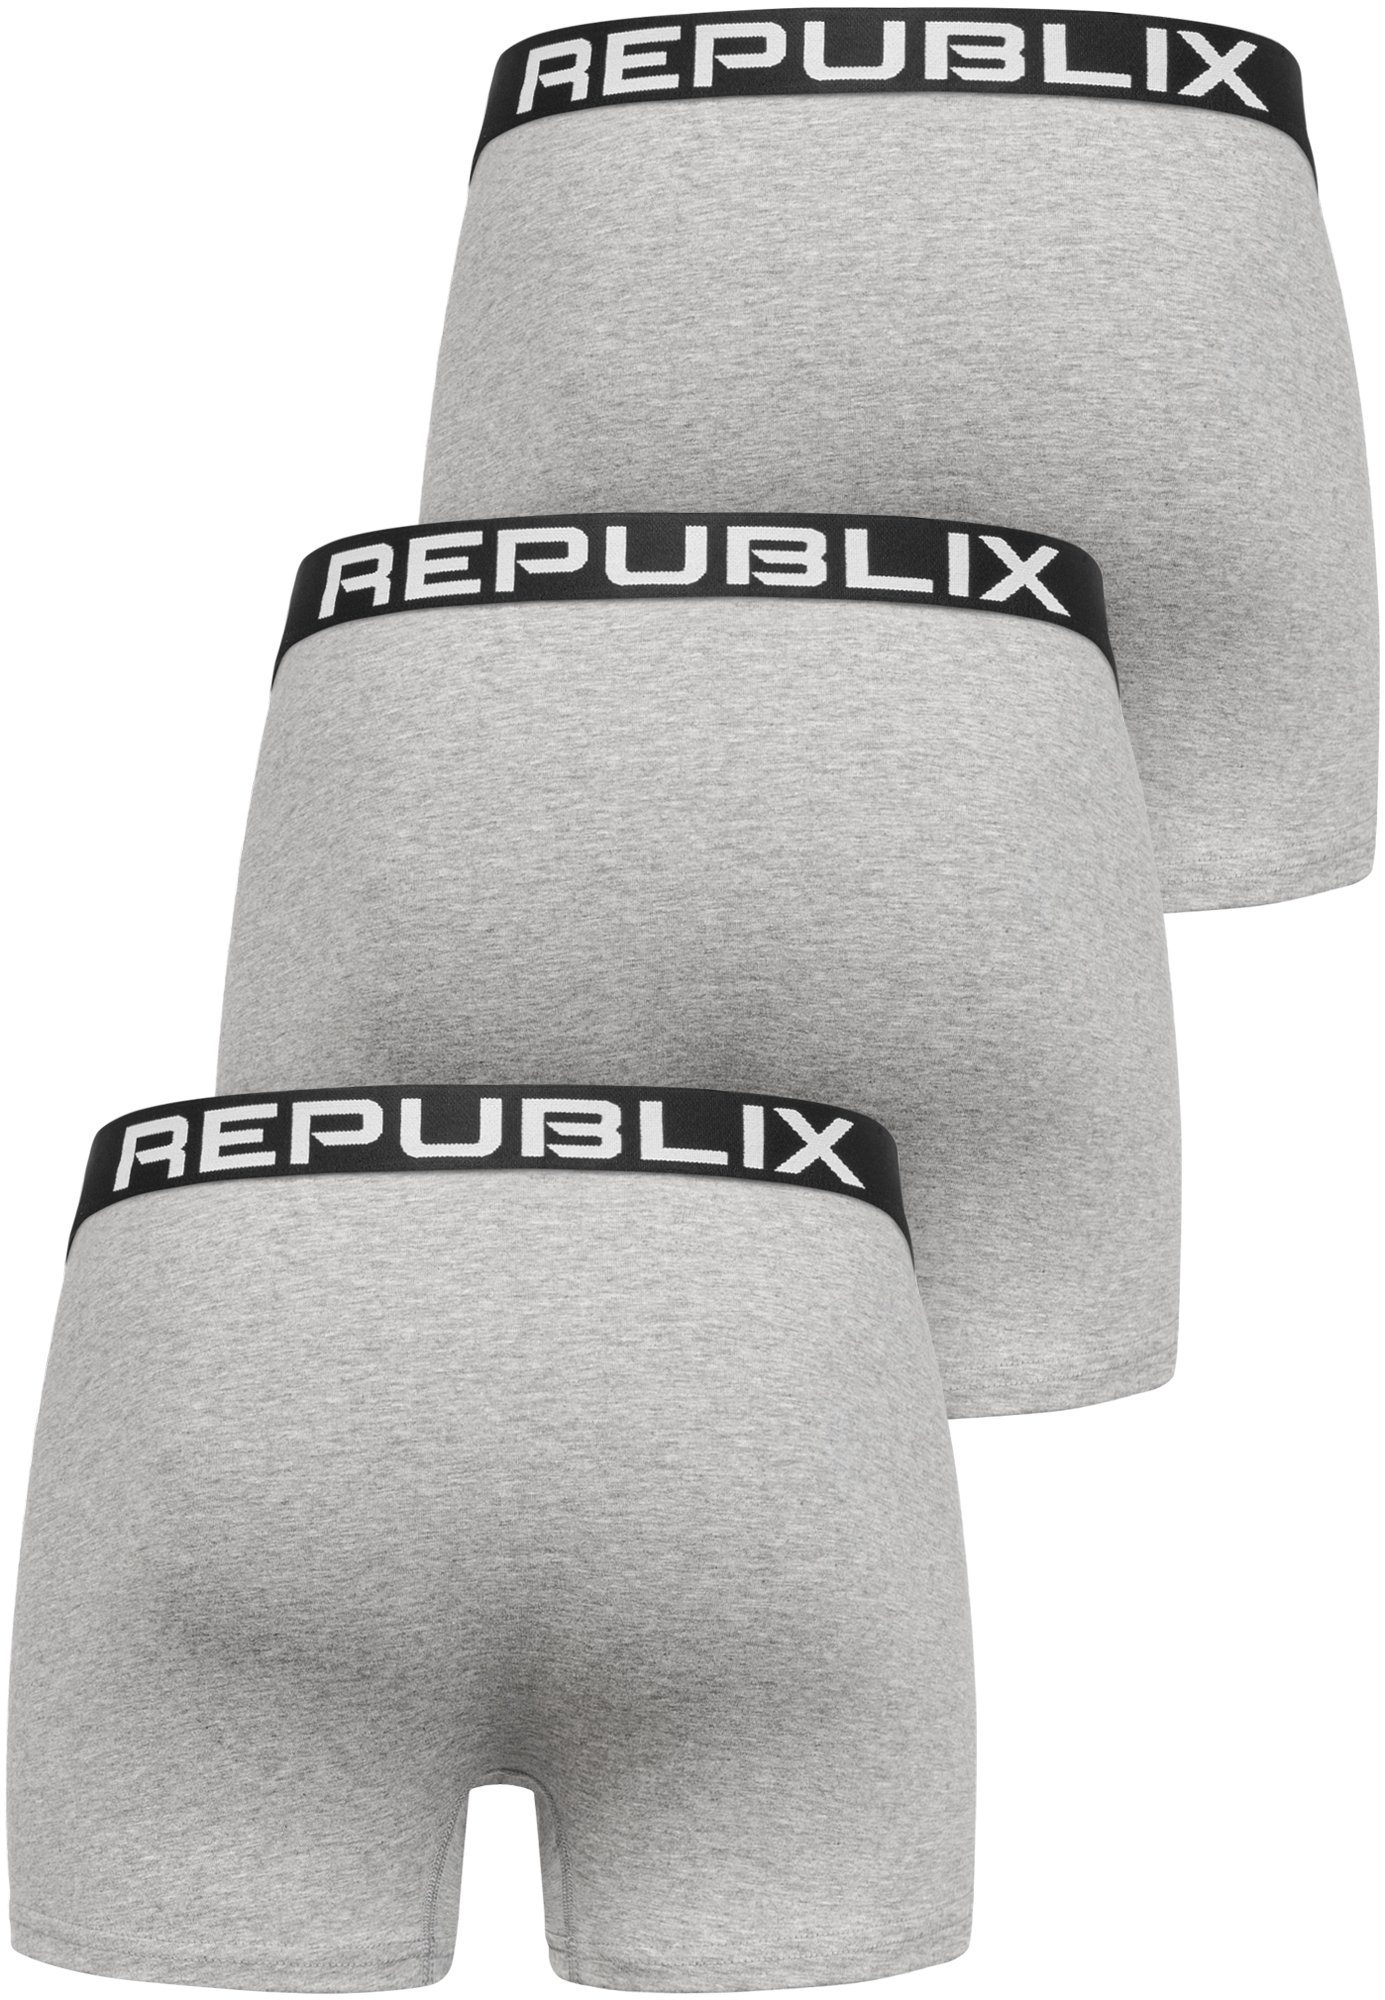 REPUBLIX Boxershorts Unterhose (3er-Pack) Baumwolle Unterwäsche Grau/Schwarz Männer DON Herren